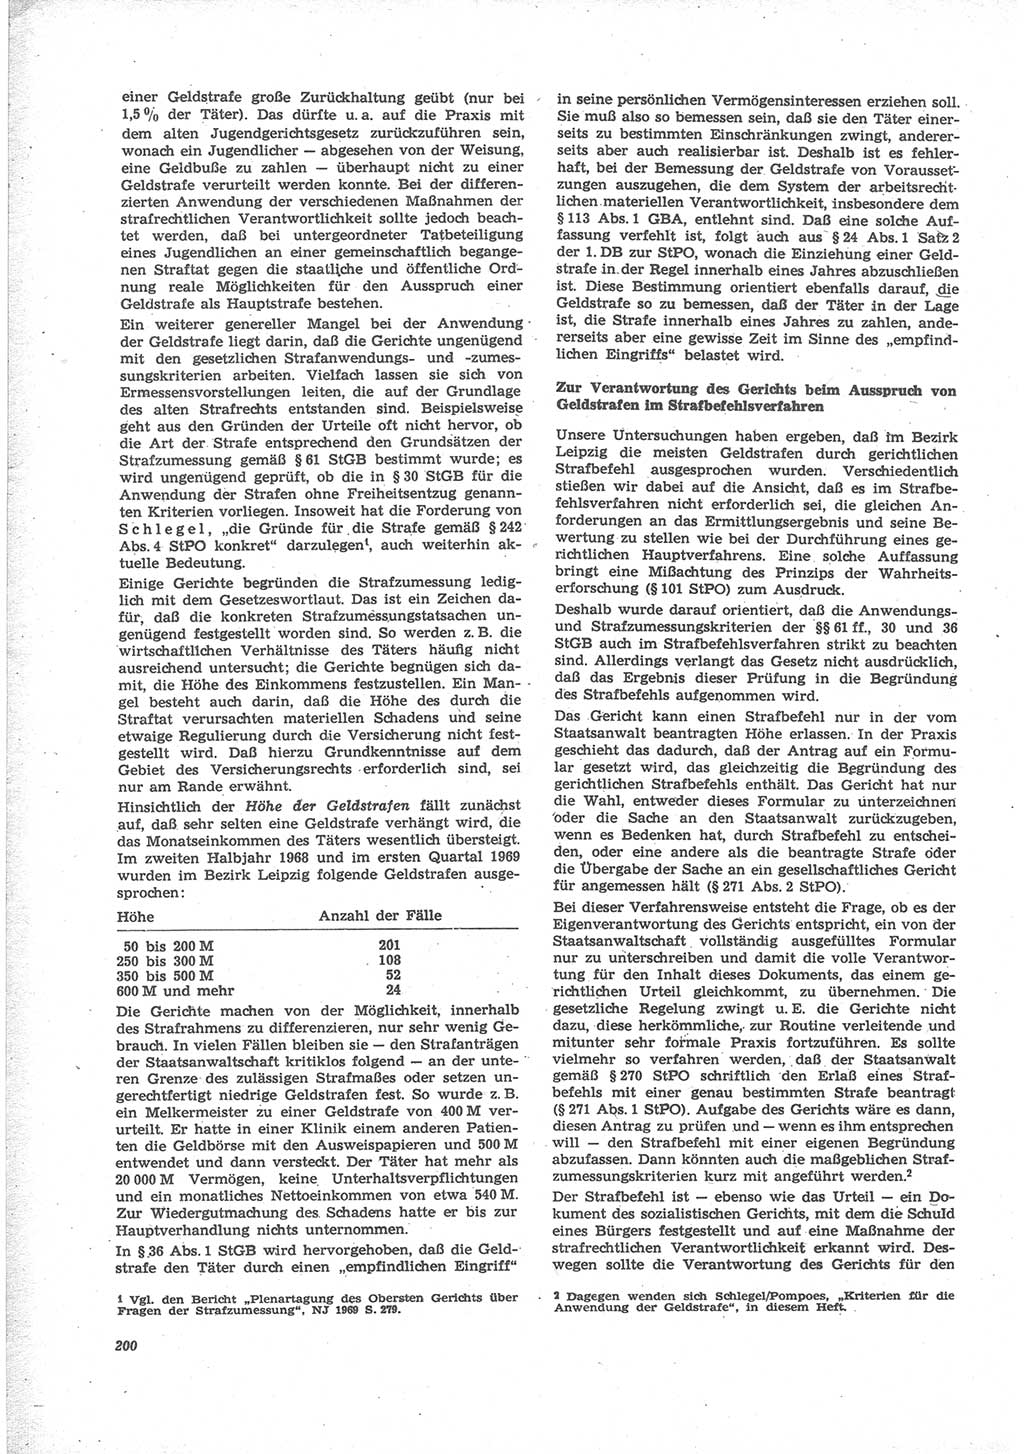 Neue Justiz (NJ), Zeitschrift für Recht und Rechtswissenschaft [Deutsche Demokratische Republik (DDR)], 24. Jahrgang 1970, Seite 200 (NJ DDR 1970, S. 200)